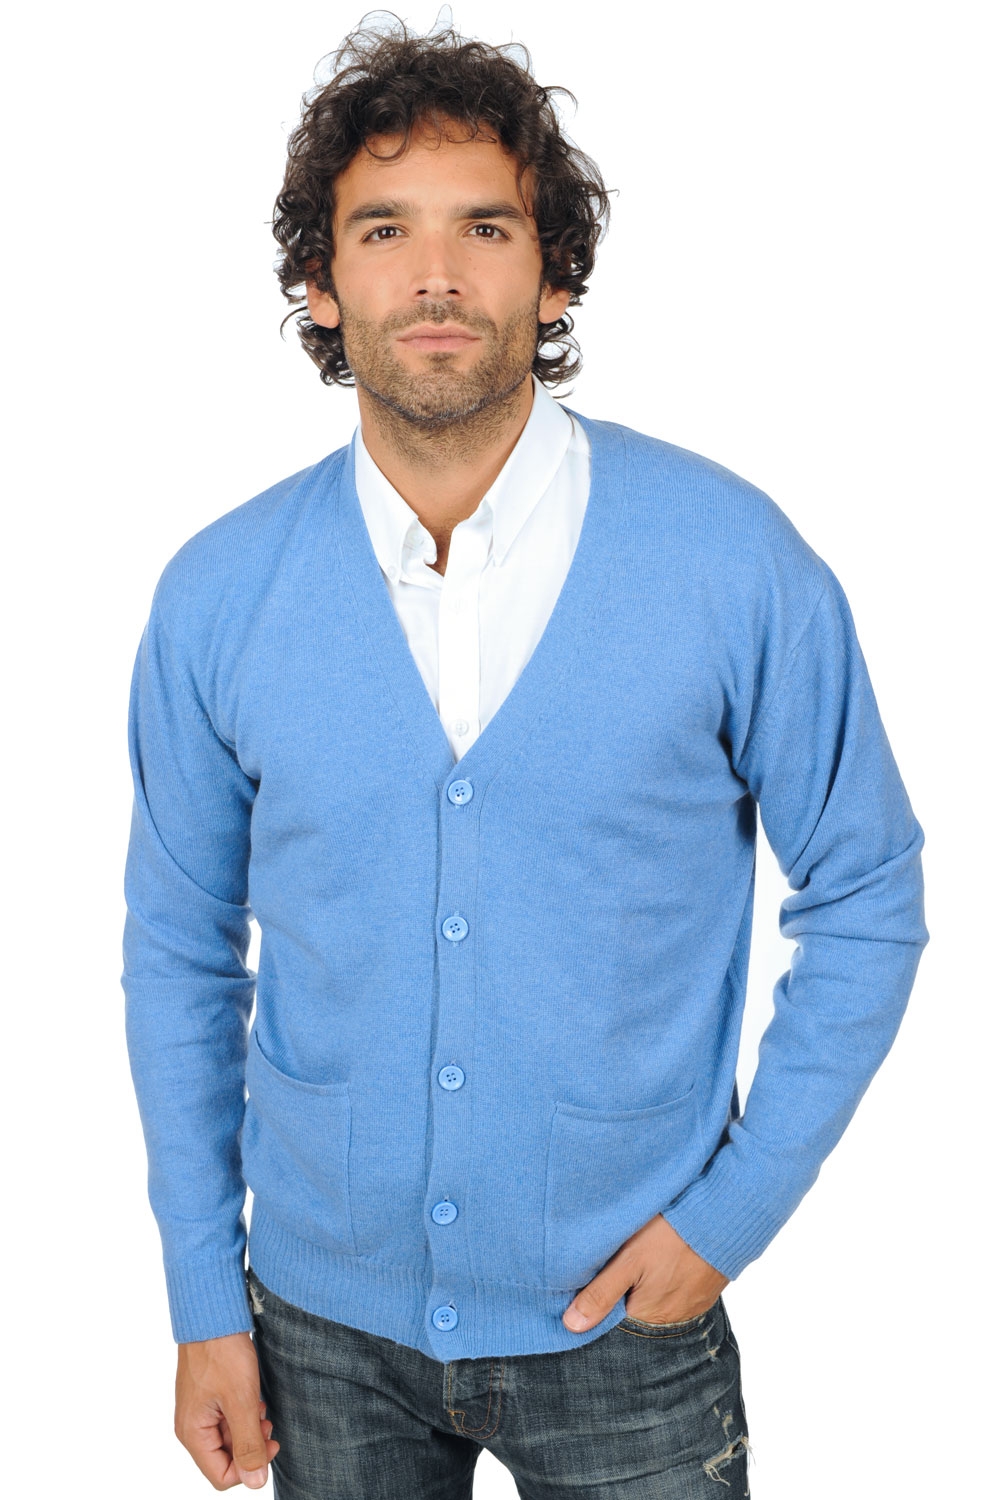 Cashmere men waistcoat sleeveless sweaters yoni blue chine 4xl